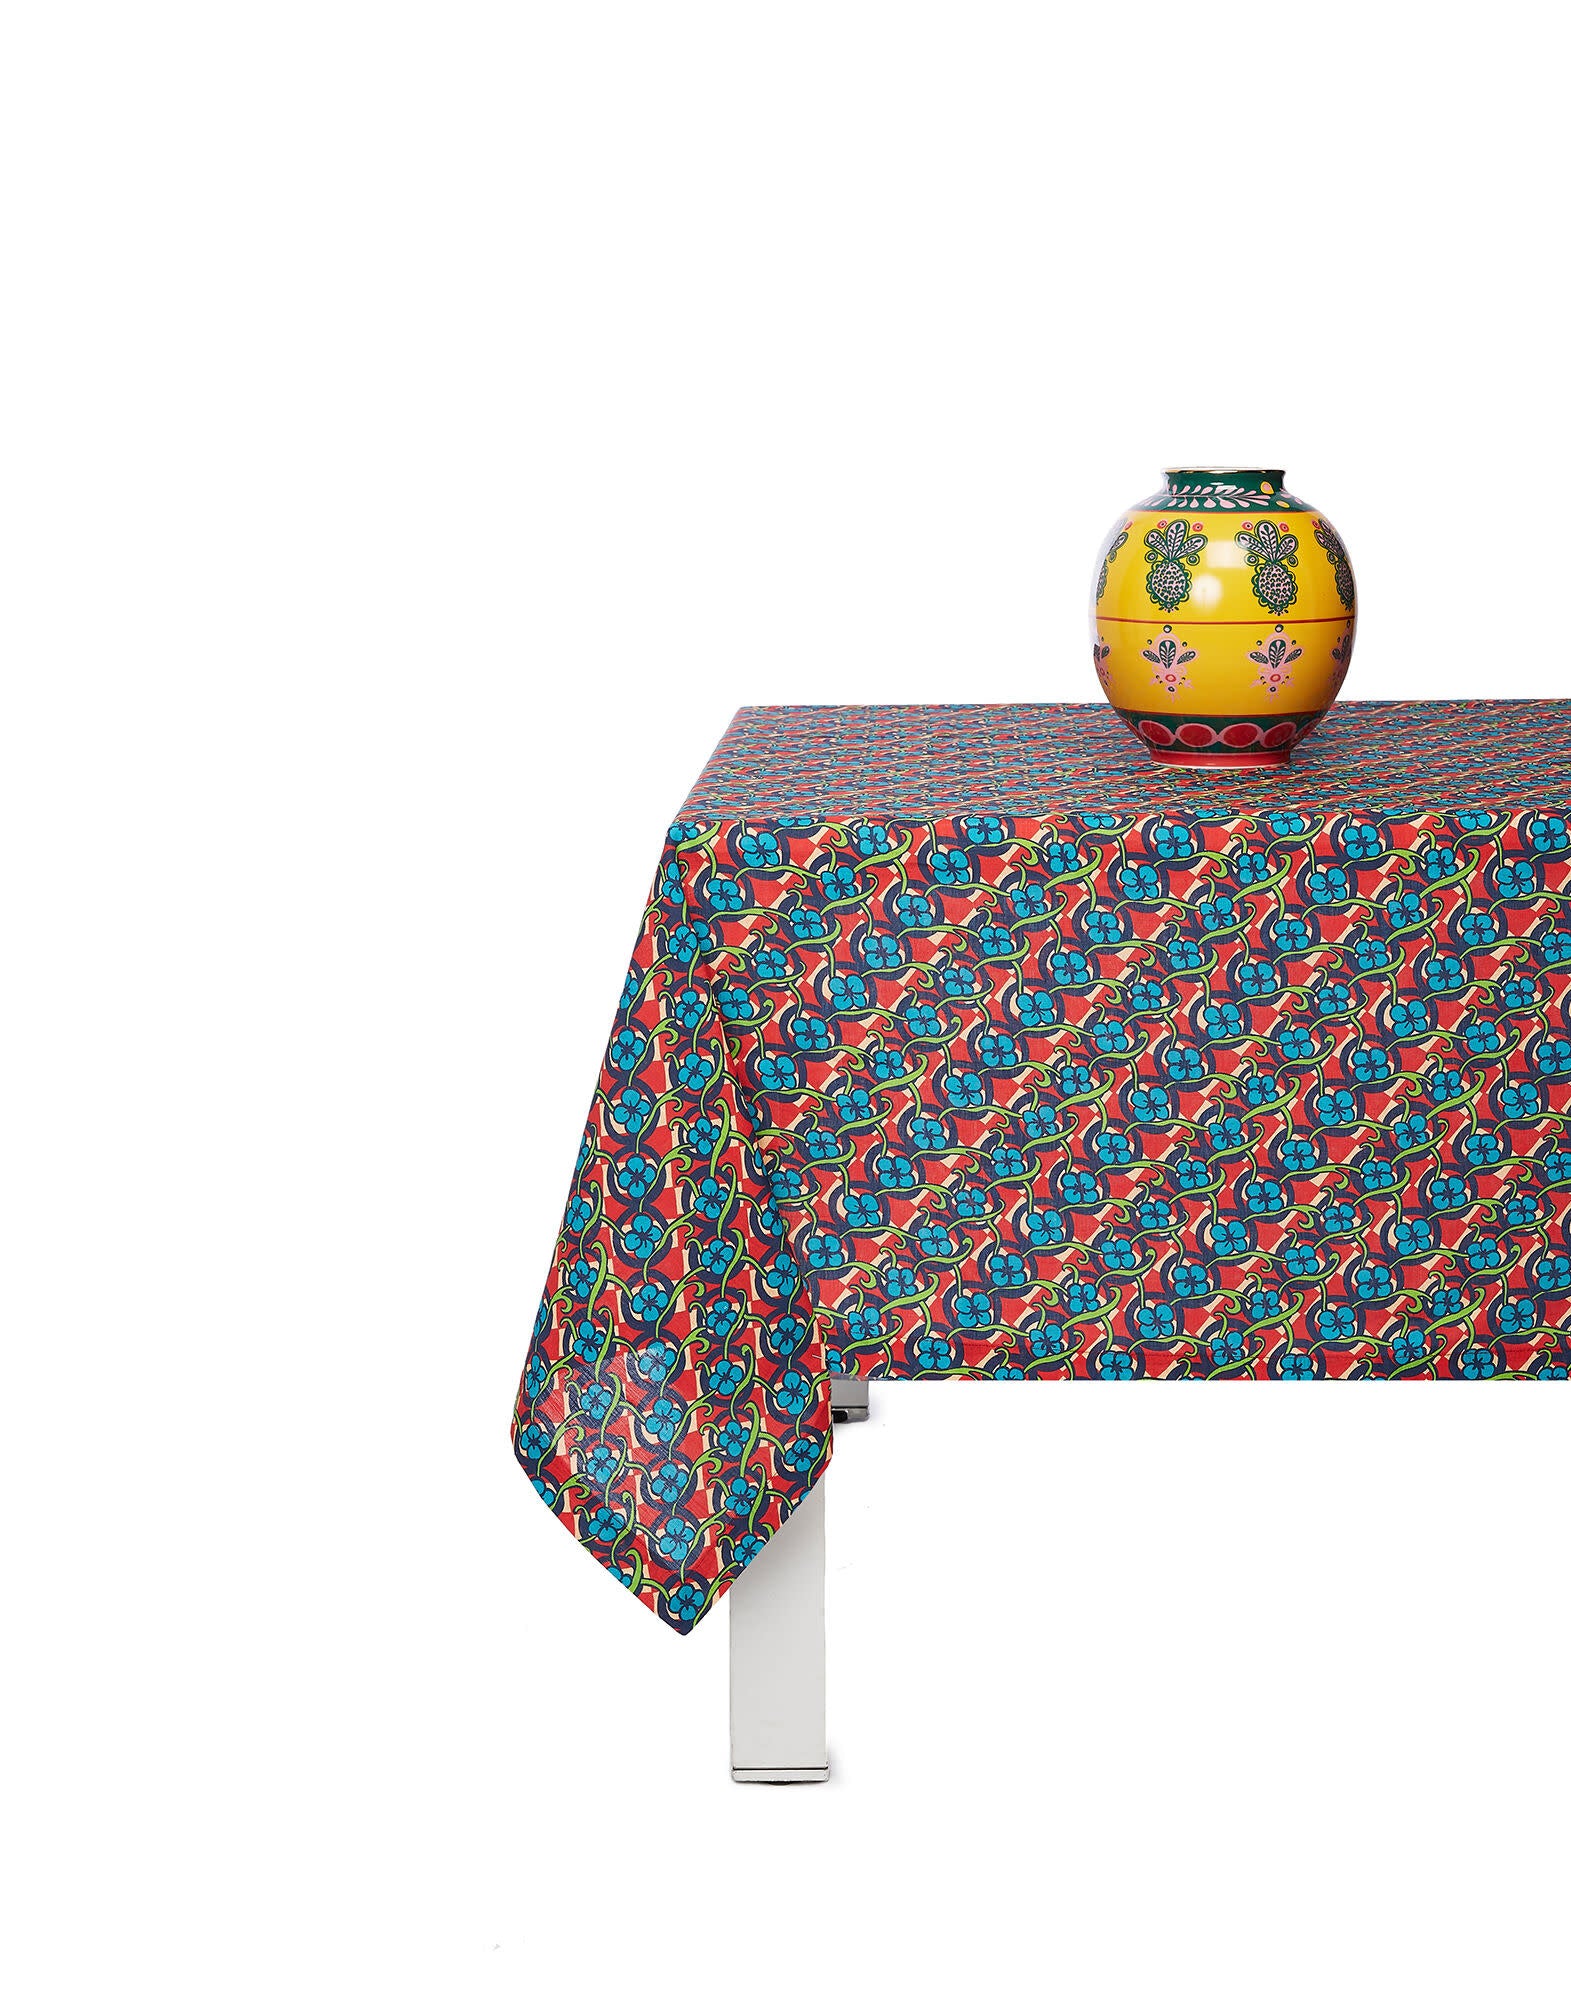 Maison Lipari LA DOUBLE J Large Tablecloth | Linen | Picnic | 180x350 cm  LA DOUBLE J.